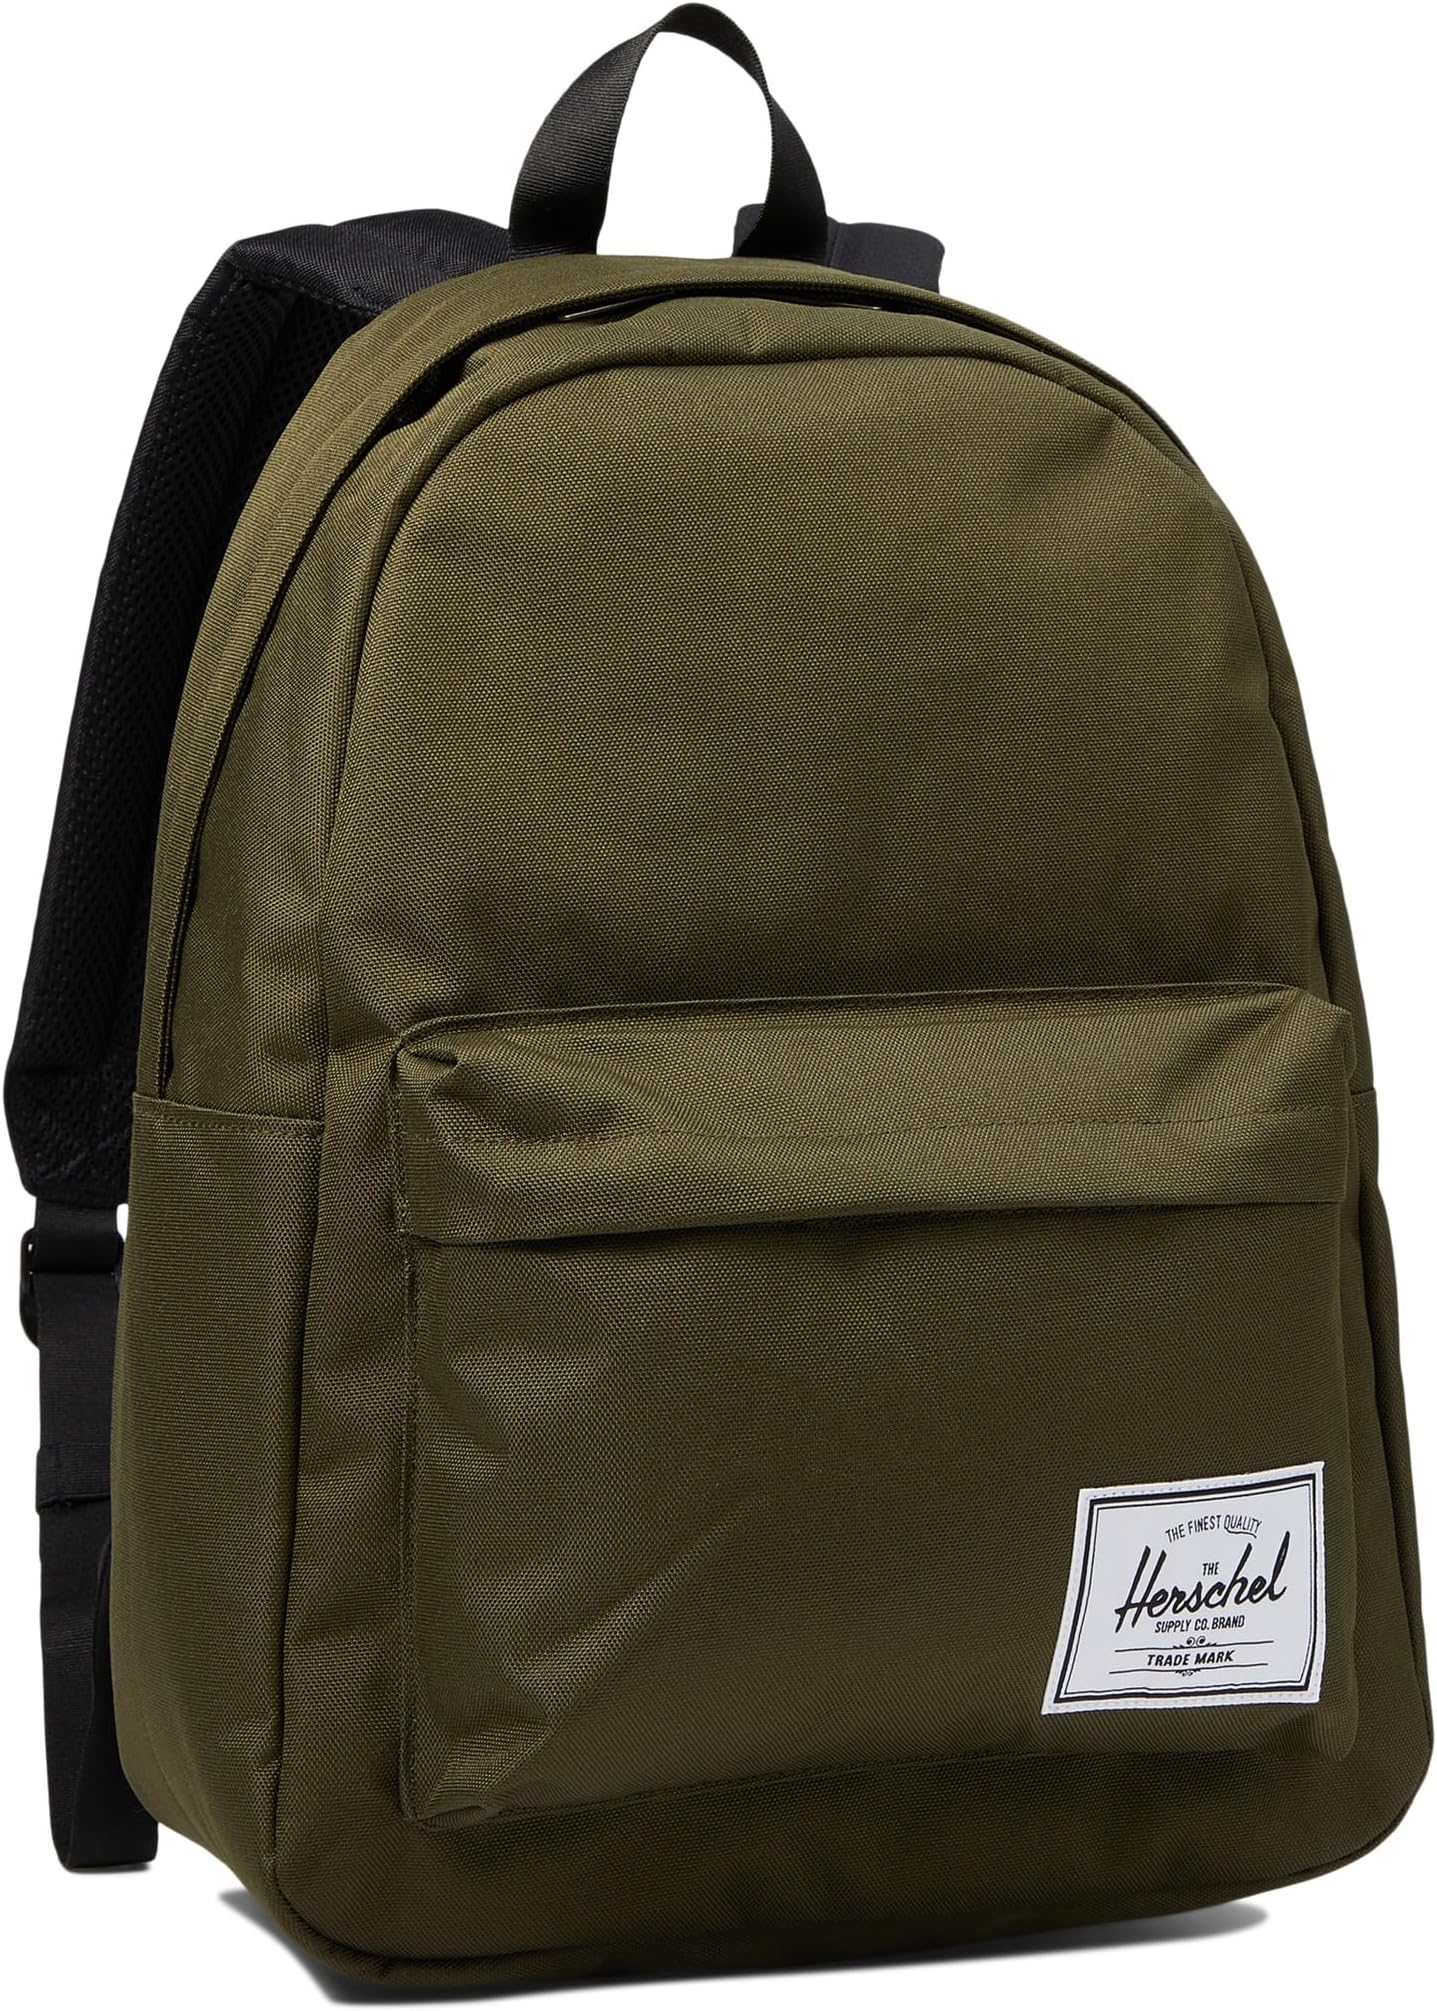 сумка novel herschel supply co цвет ivy green Рюкзак Classic Backpack Herschel Supply Co., цвет Ivy Green